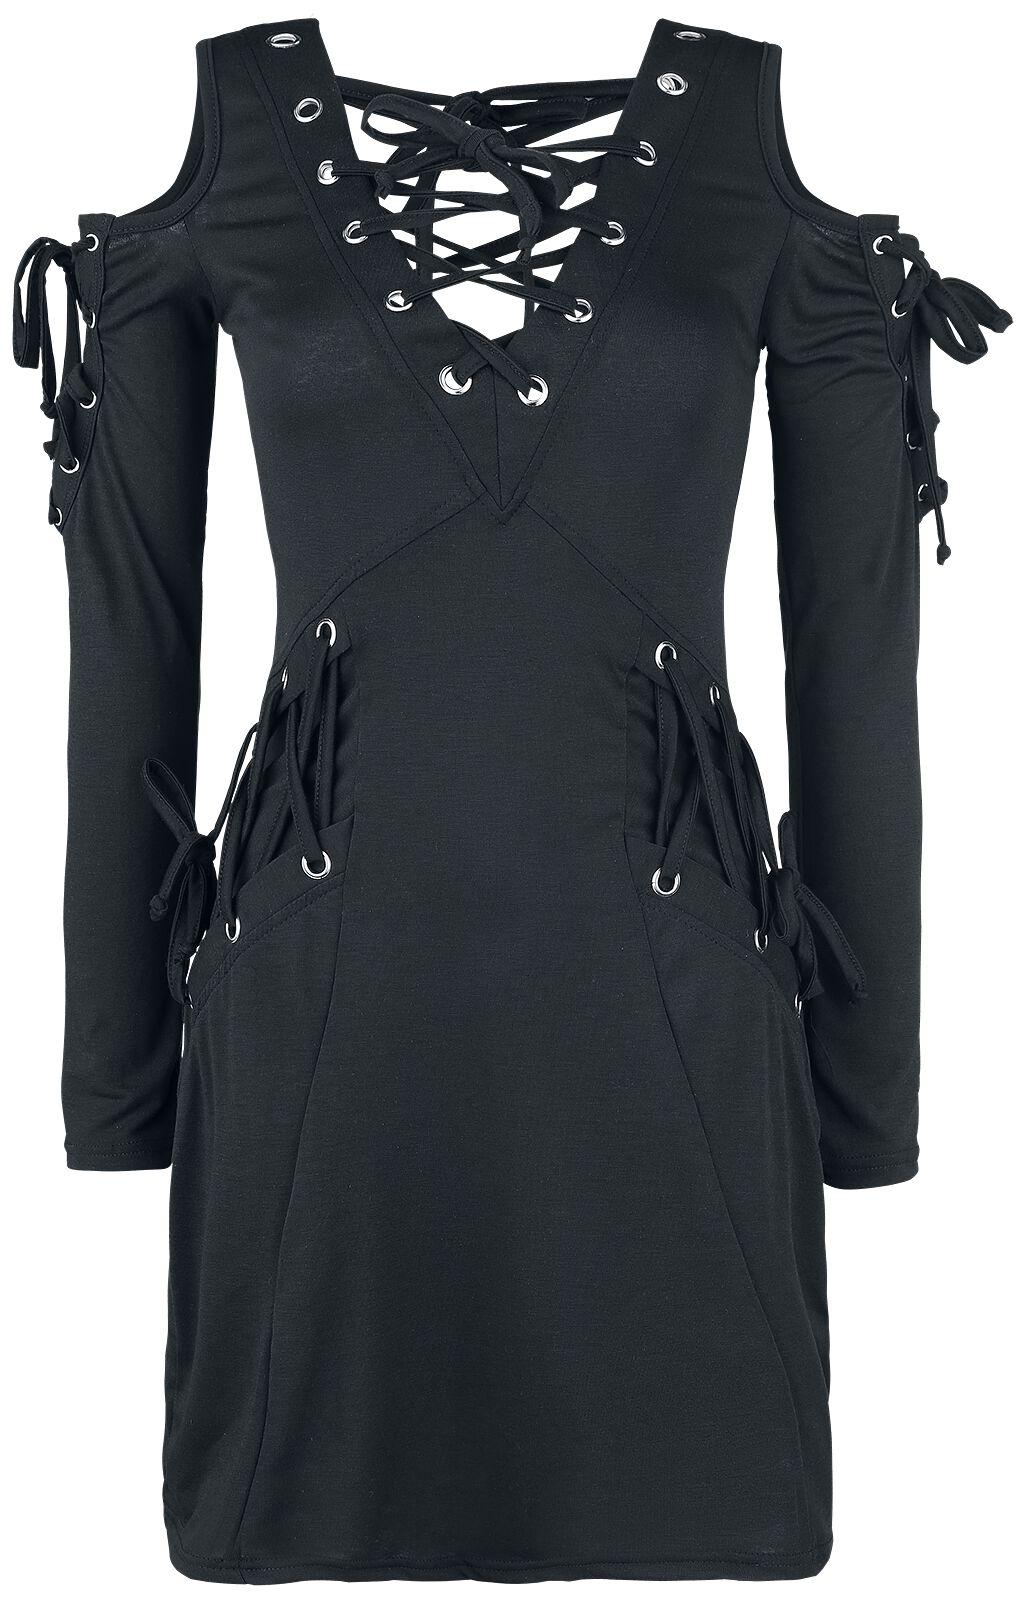 Innocent - Gothic Kurzes Kleid - Crave Top - S bis XXL - für Damen - Größe M - schwarz